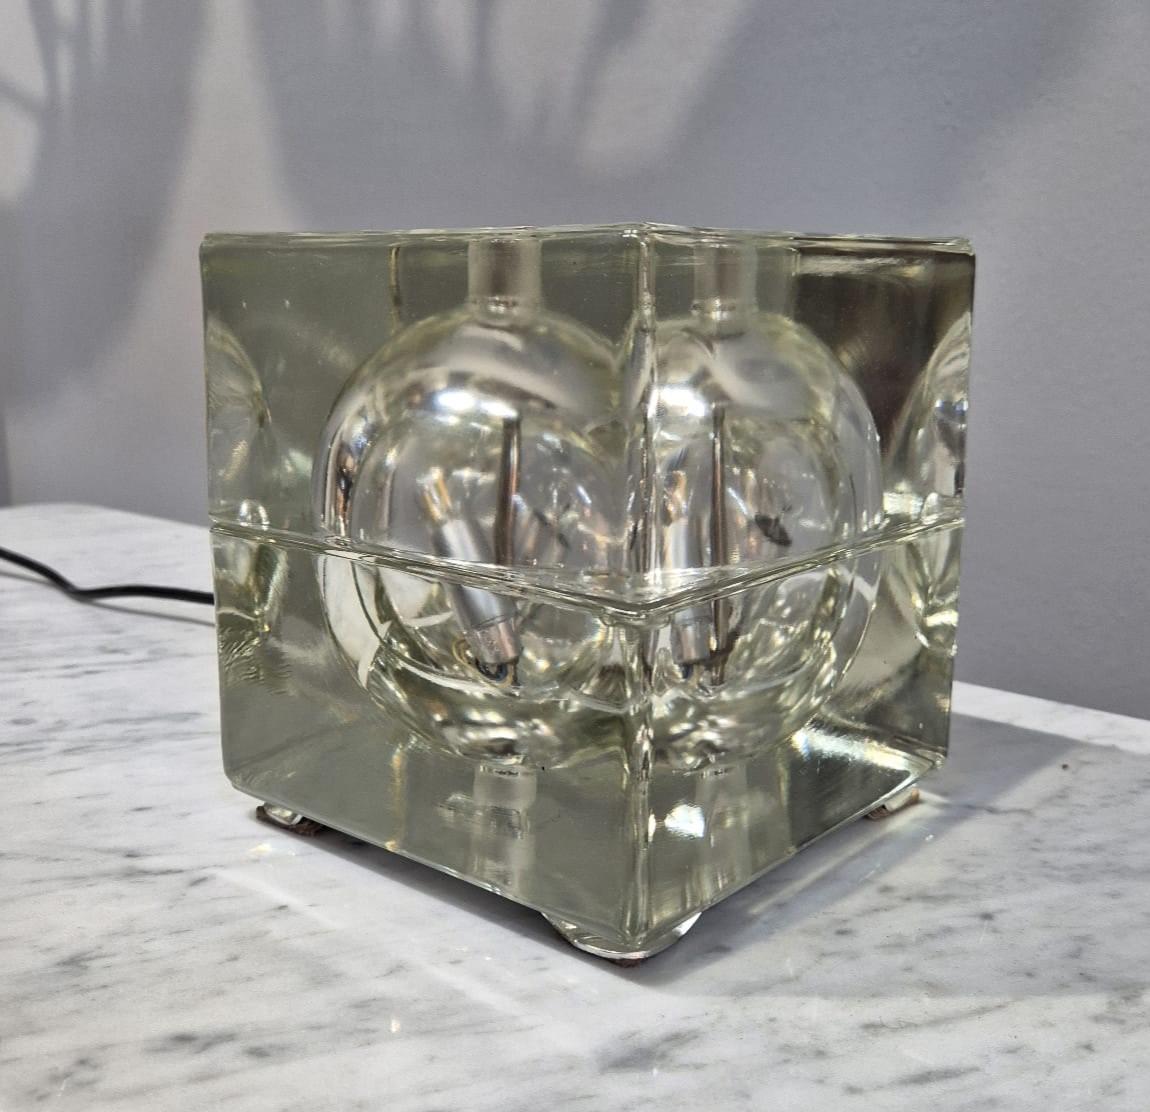 Tischleuchte Cubosfera, entworfen von Alessandro Mendini im Jahr 1968.
Diese von Fidenza Vetraria hergestellte Lampe besteht aus kristallinem Glas, das zu einem Würfel geformt ist. Die Leuchte steht auf vier Metallbeinen und ist mit zwei